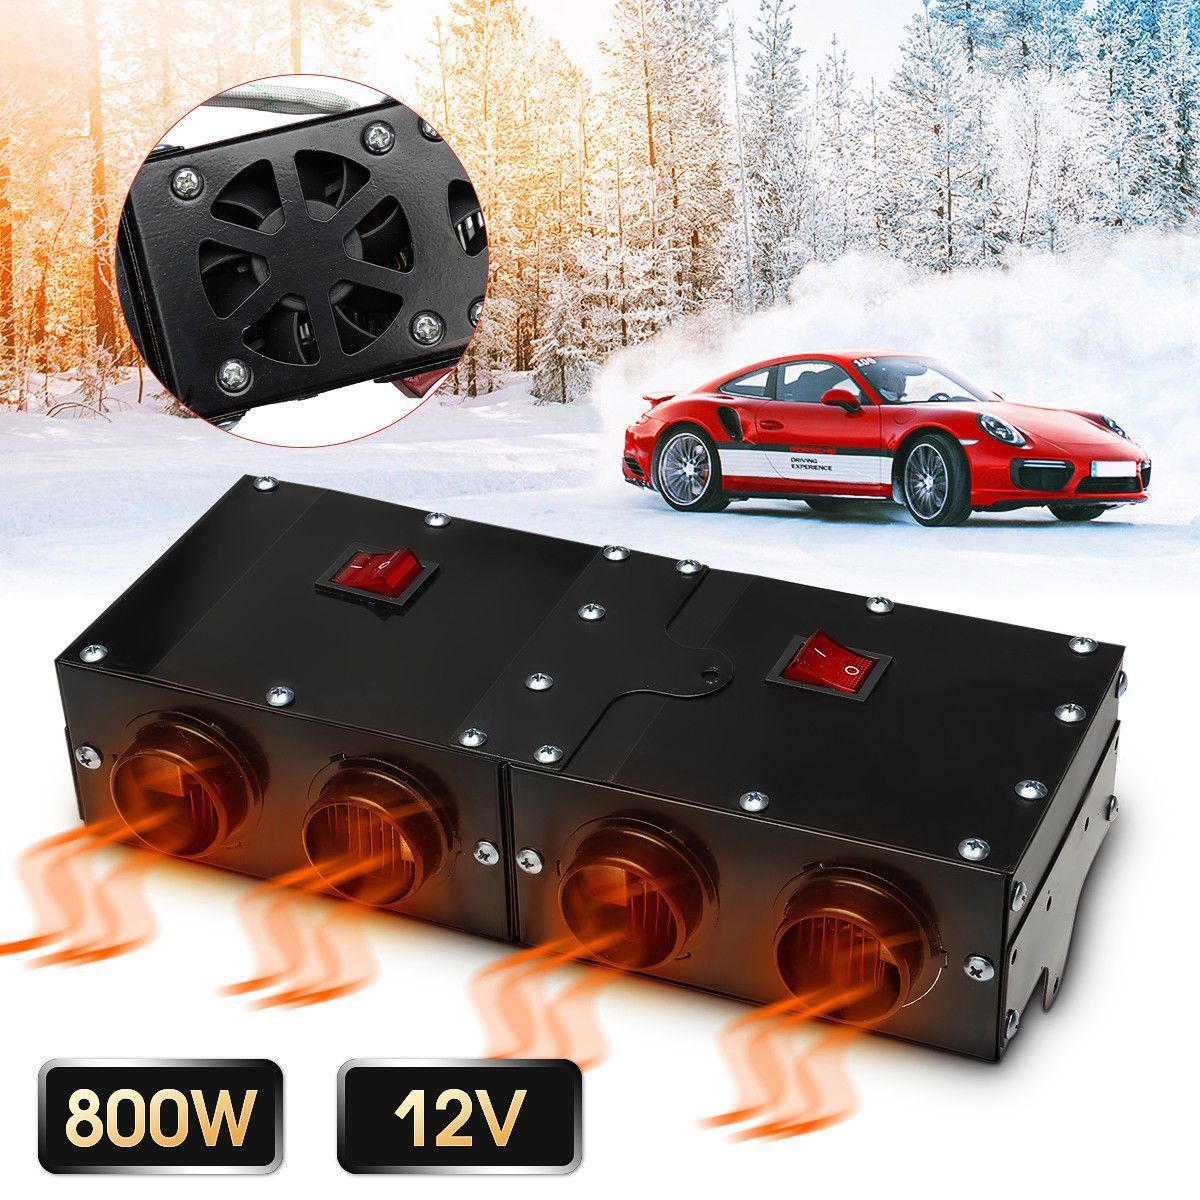 12V-300W-500W-800W-Car-Vehicle-Fan-Heater-Defroster-Demister-Hot-Heating-Warmer-Windscreen-1383612